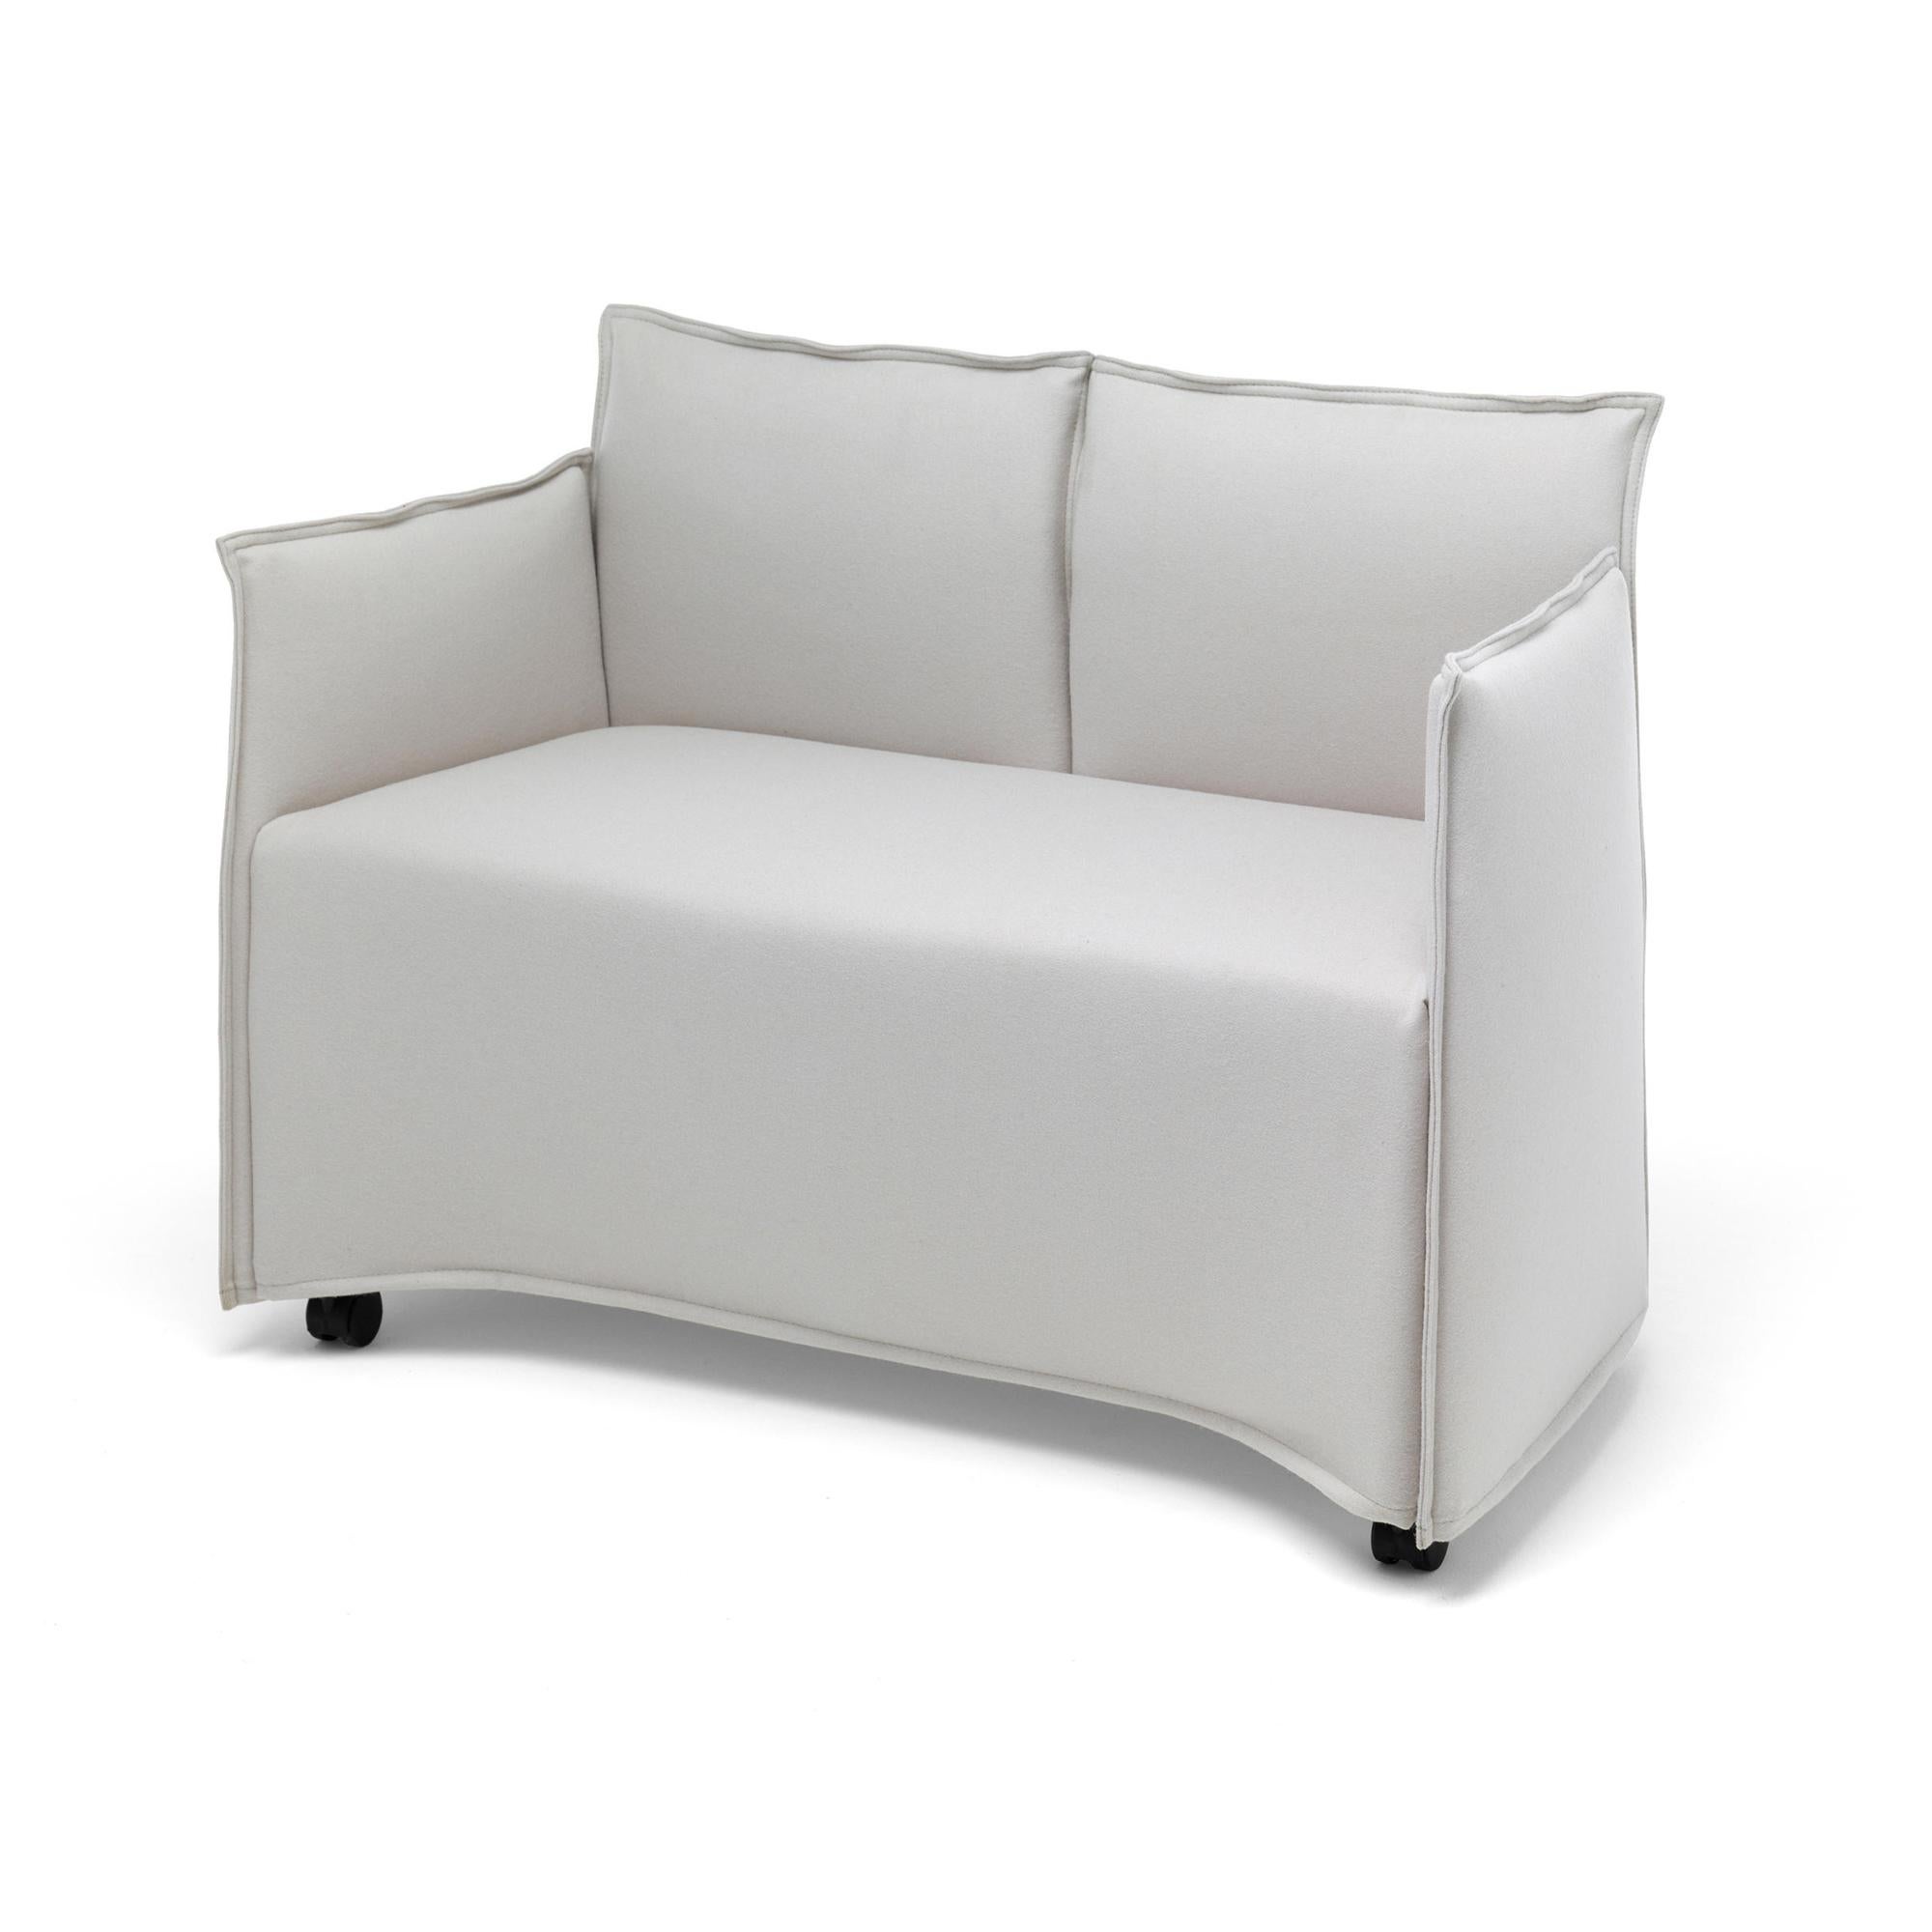 Le fauteuil Medven 2 places est composé de plusieurs cadres en acier qui sont individuellement recouverts de tissu ou de cuir, puis assemblés. Le revêtement délibérément abondant et le remplissage interne souple confèrent au fauteuil un caractère